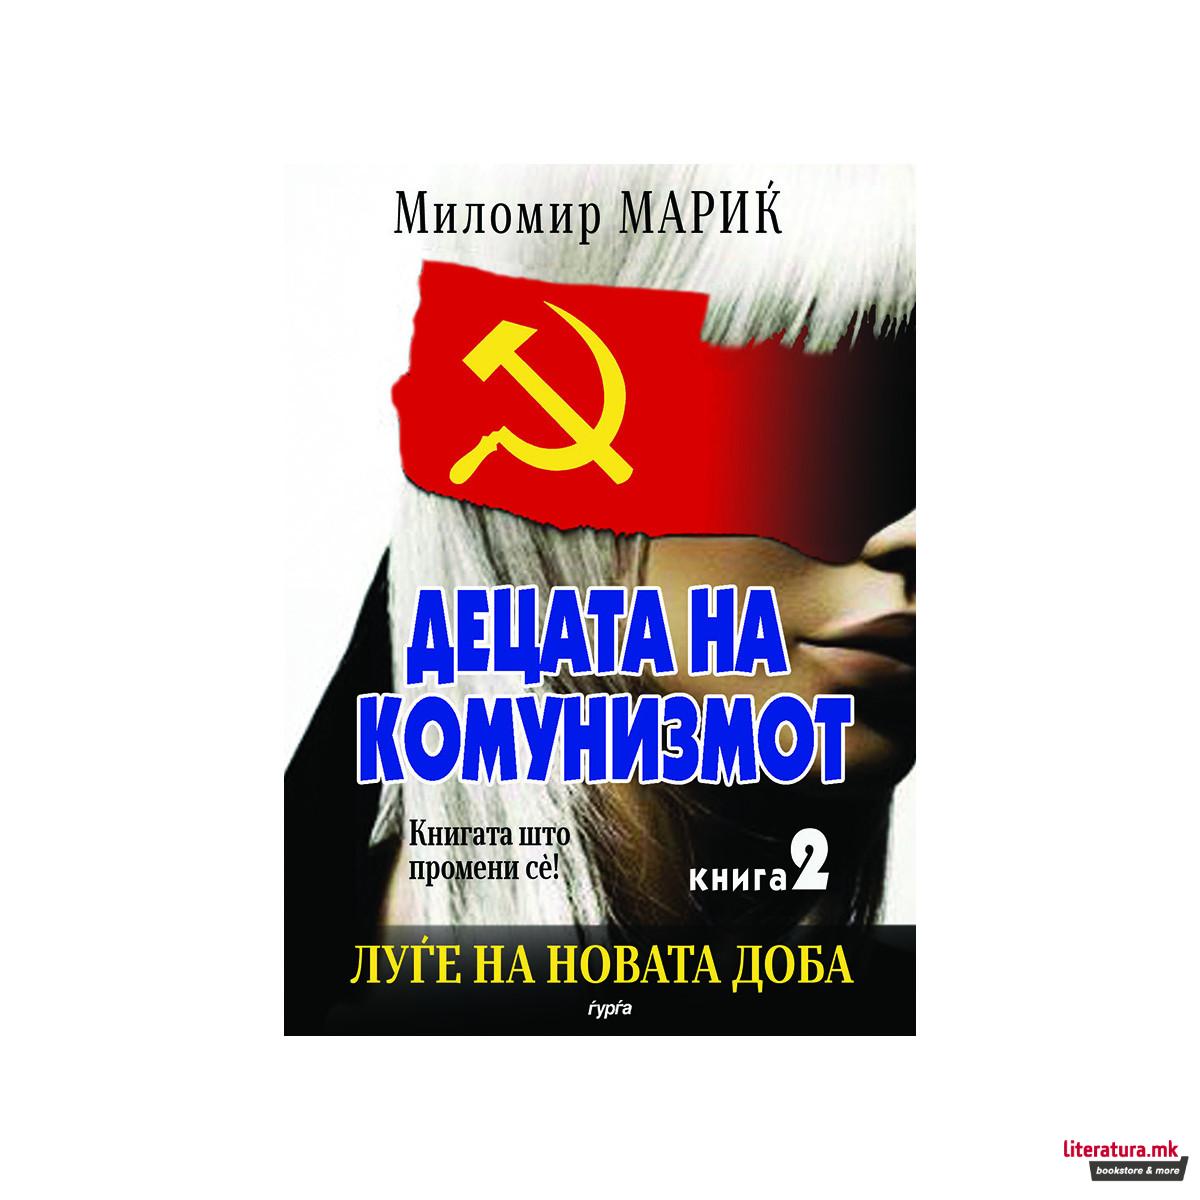 Децата на комунизмот, книга 2 